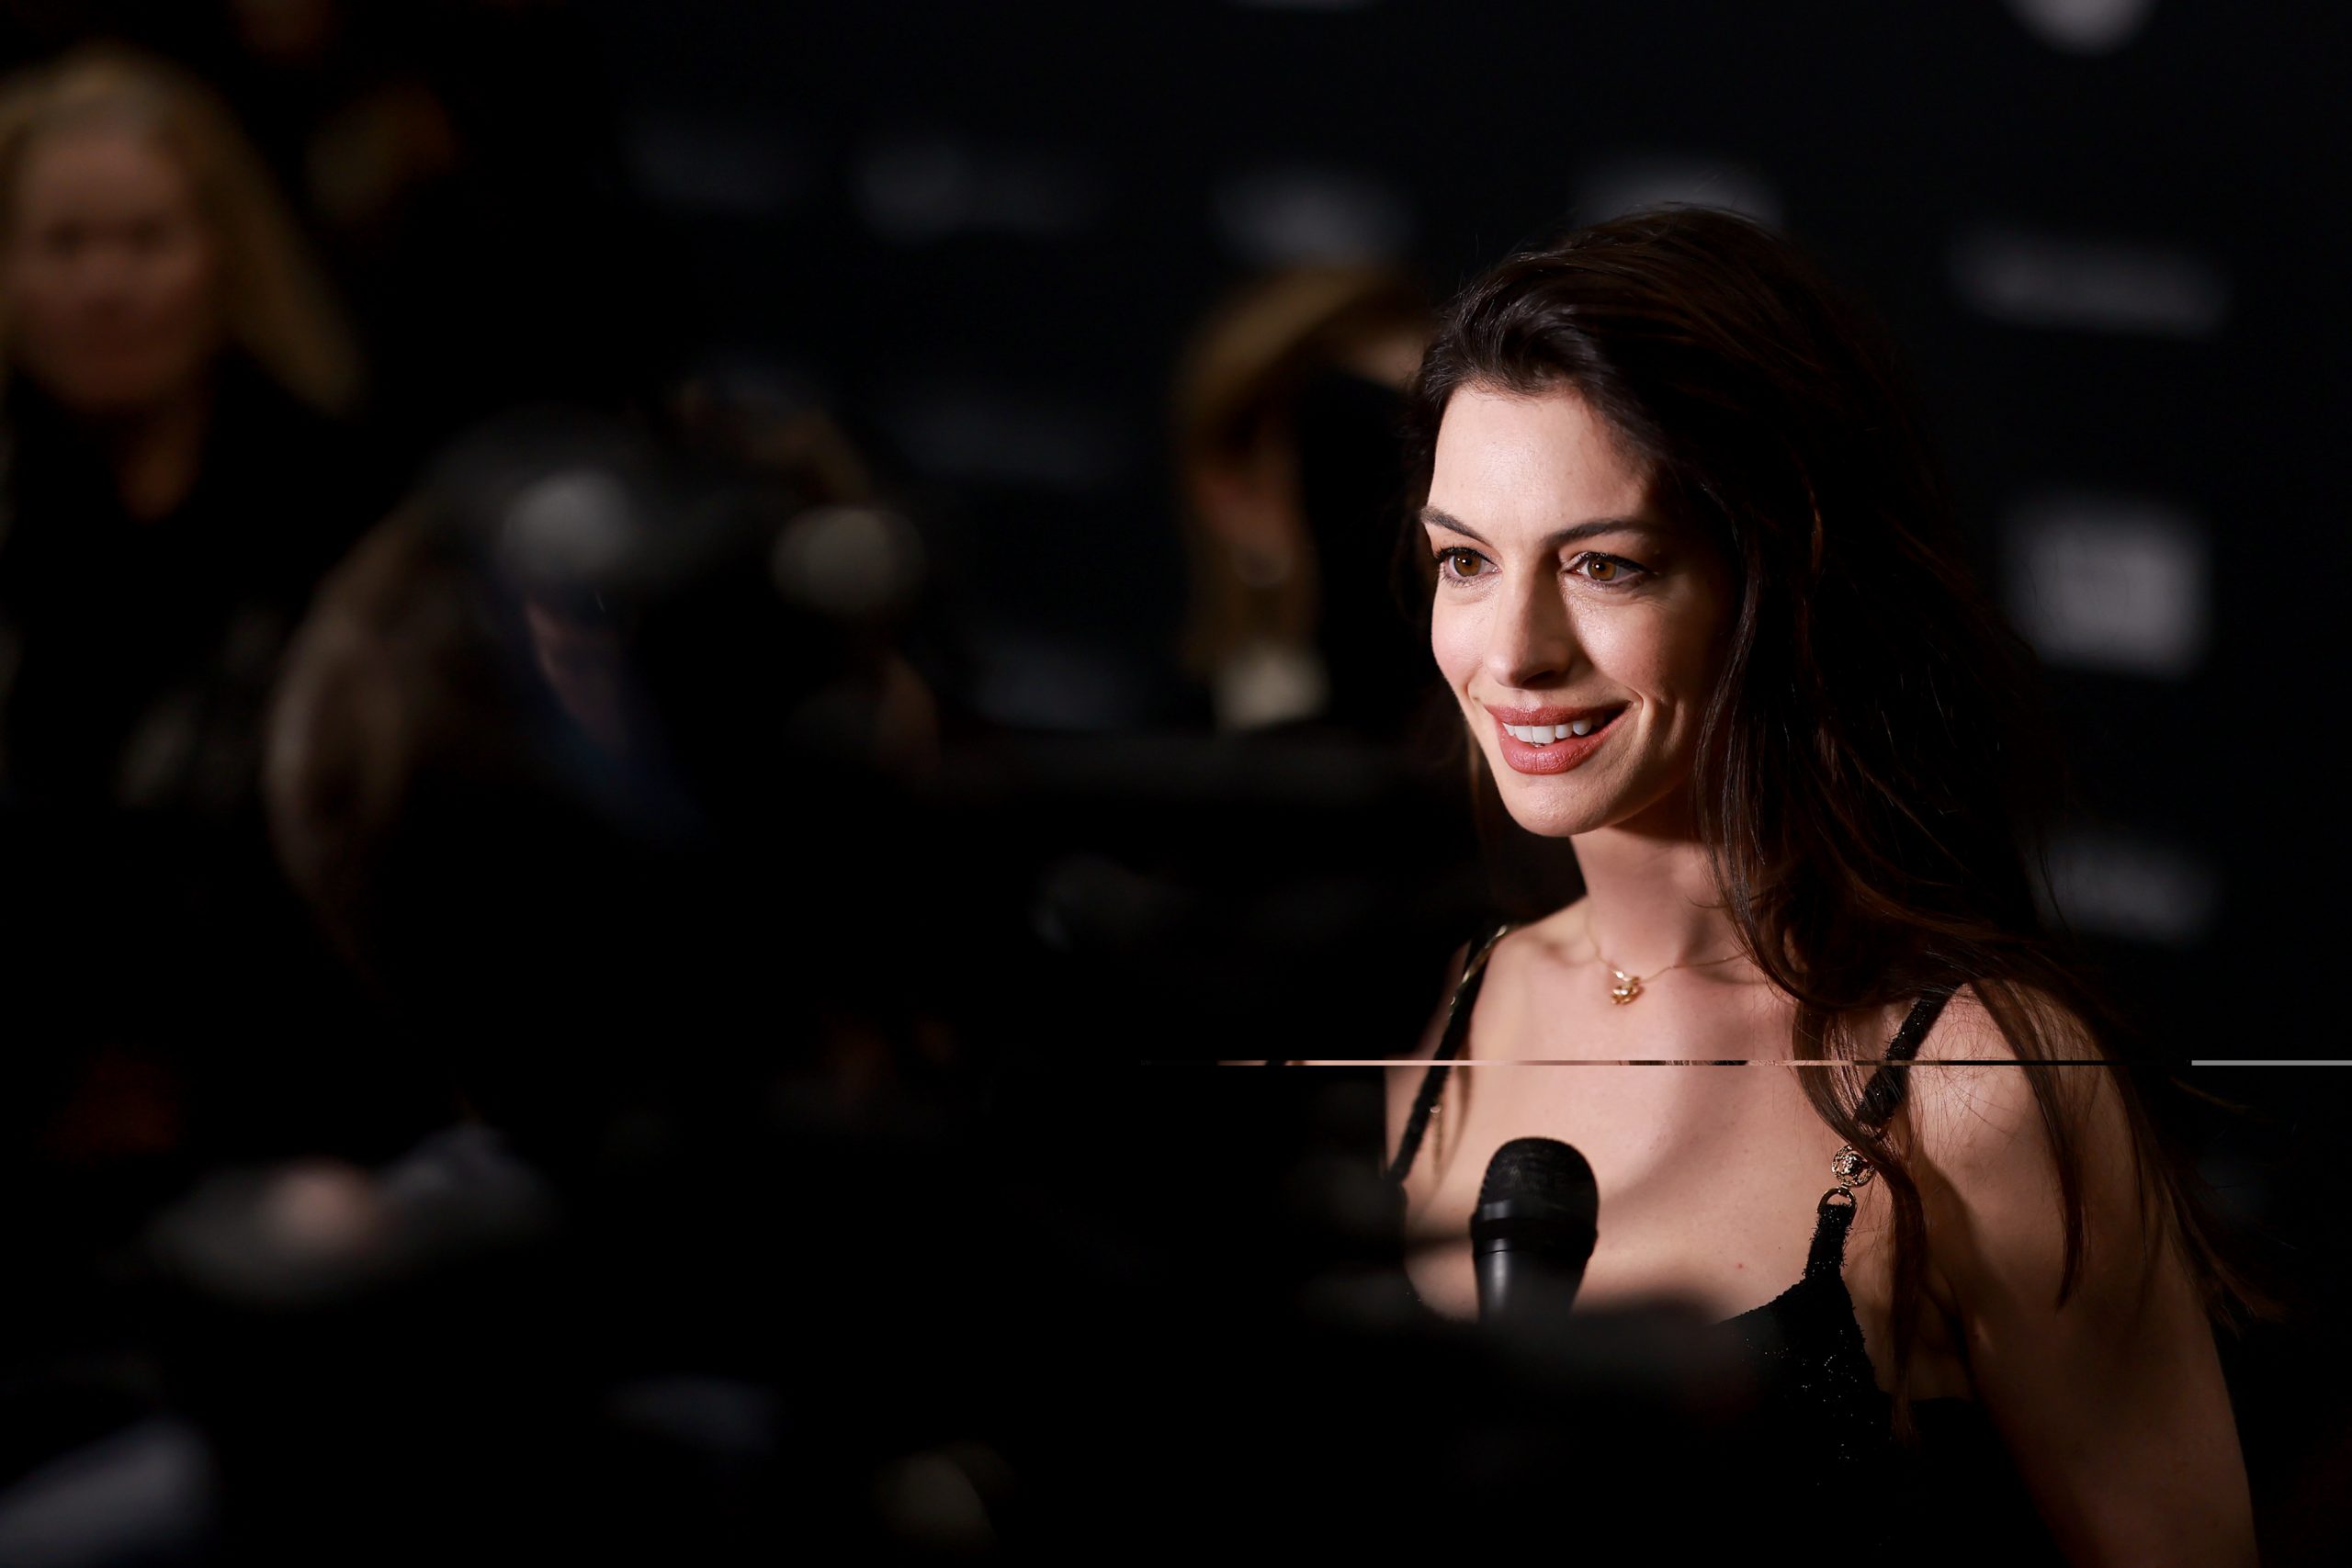 Μπουφάν (μέχρι και) στο red carpet; Η Anne Hathaway μπορεί άρα κι εσύ!